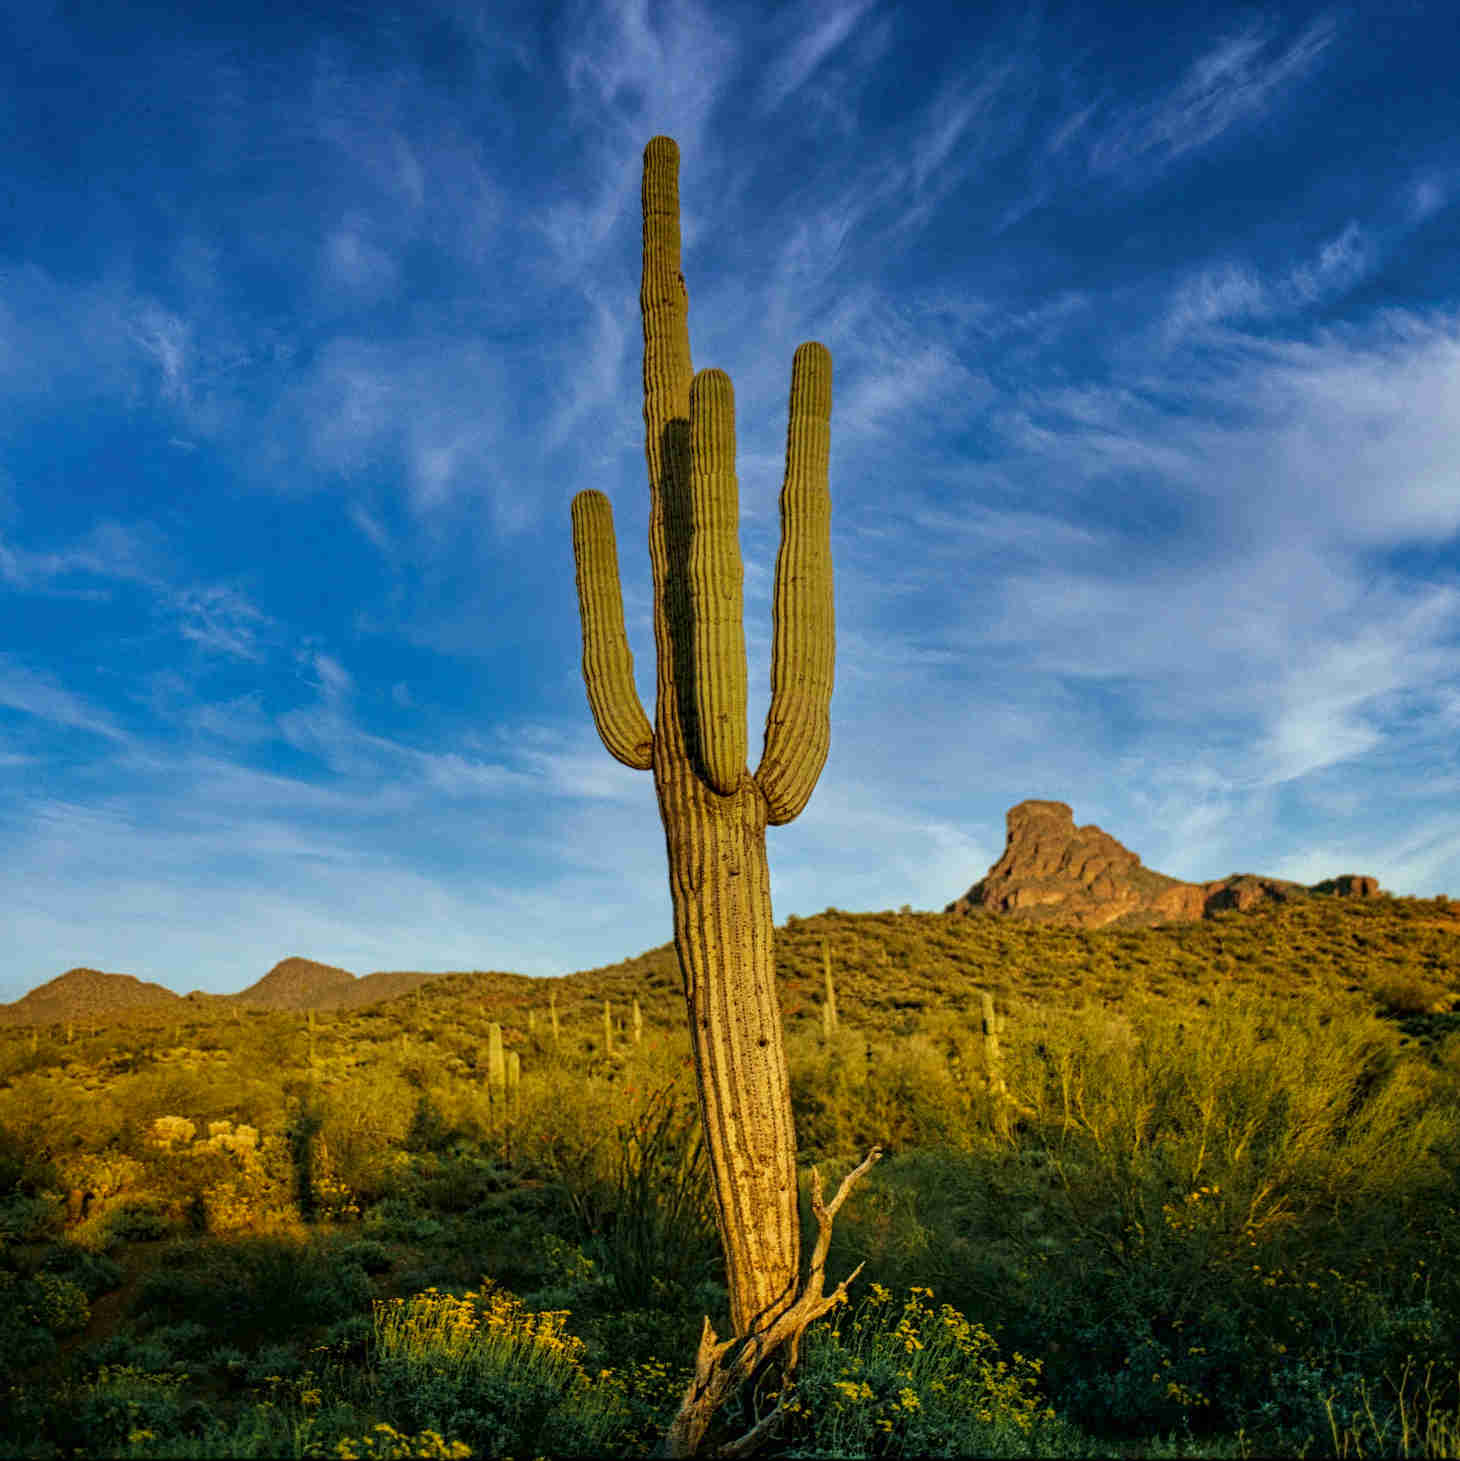 Tall Saguaro Cactus